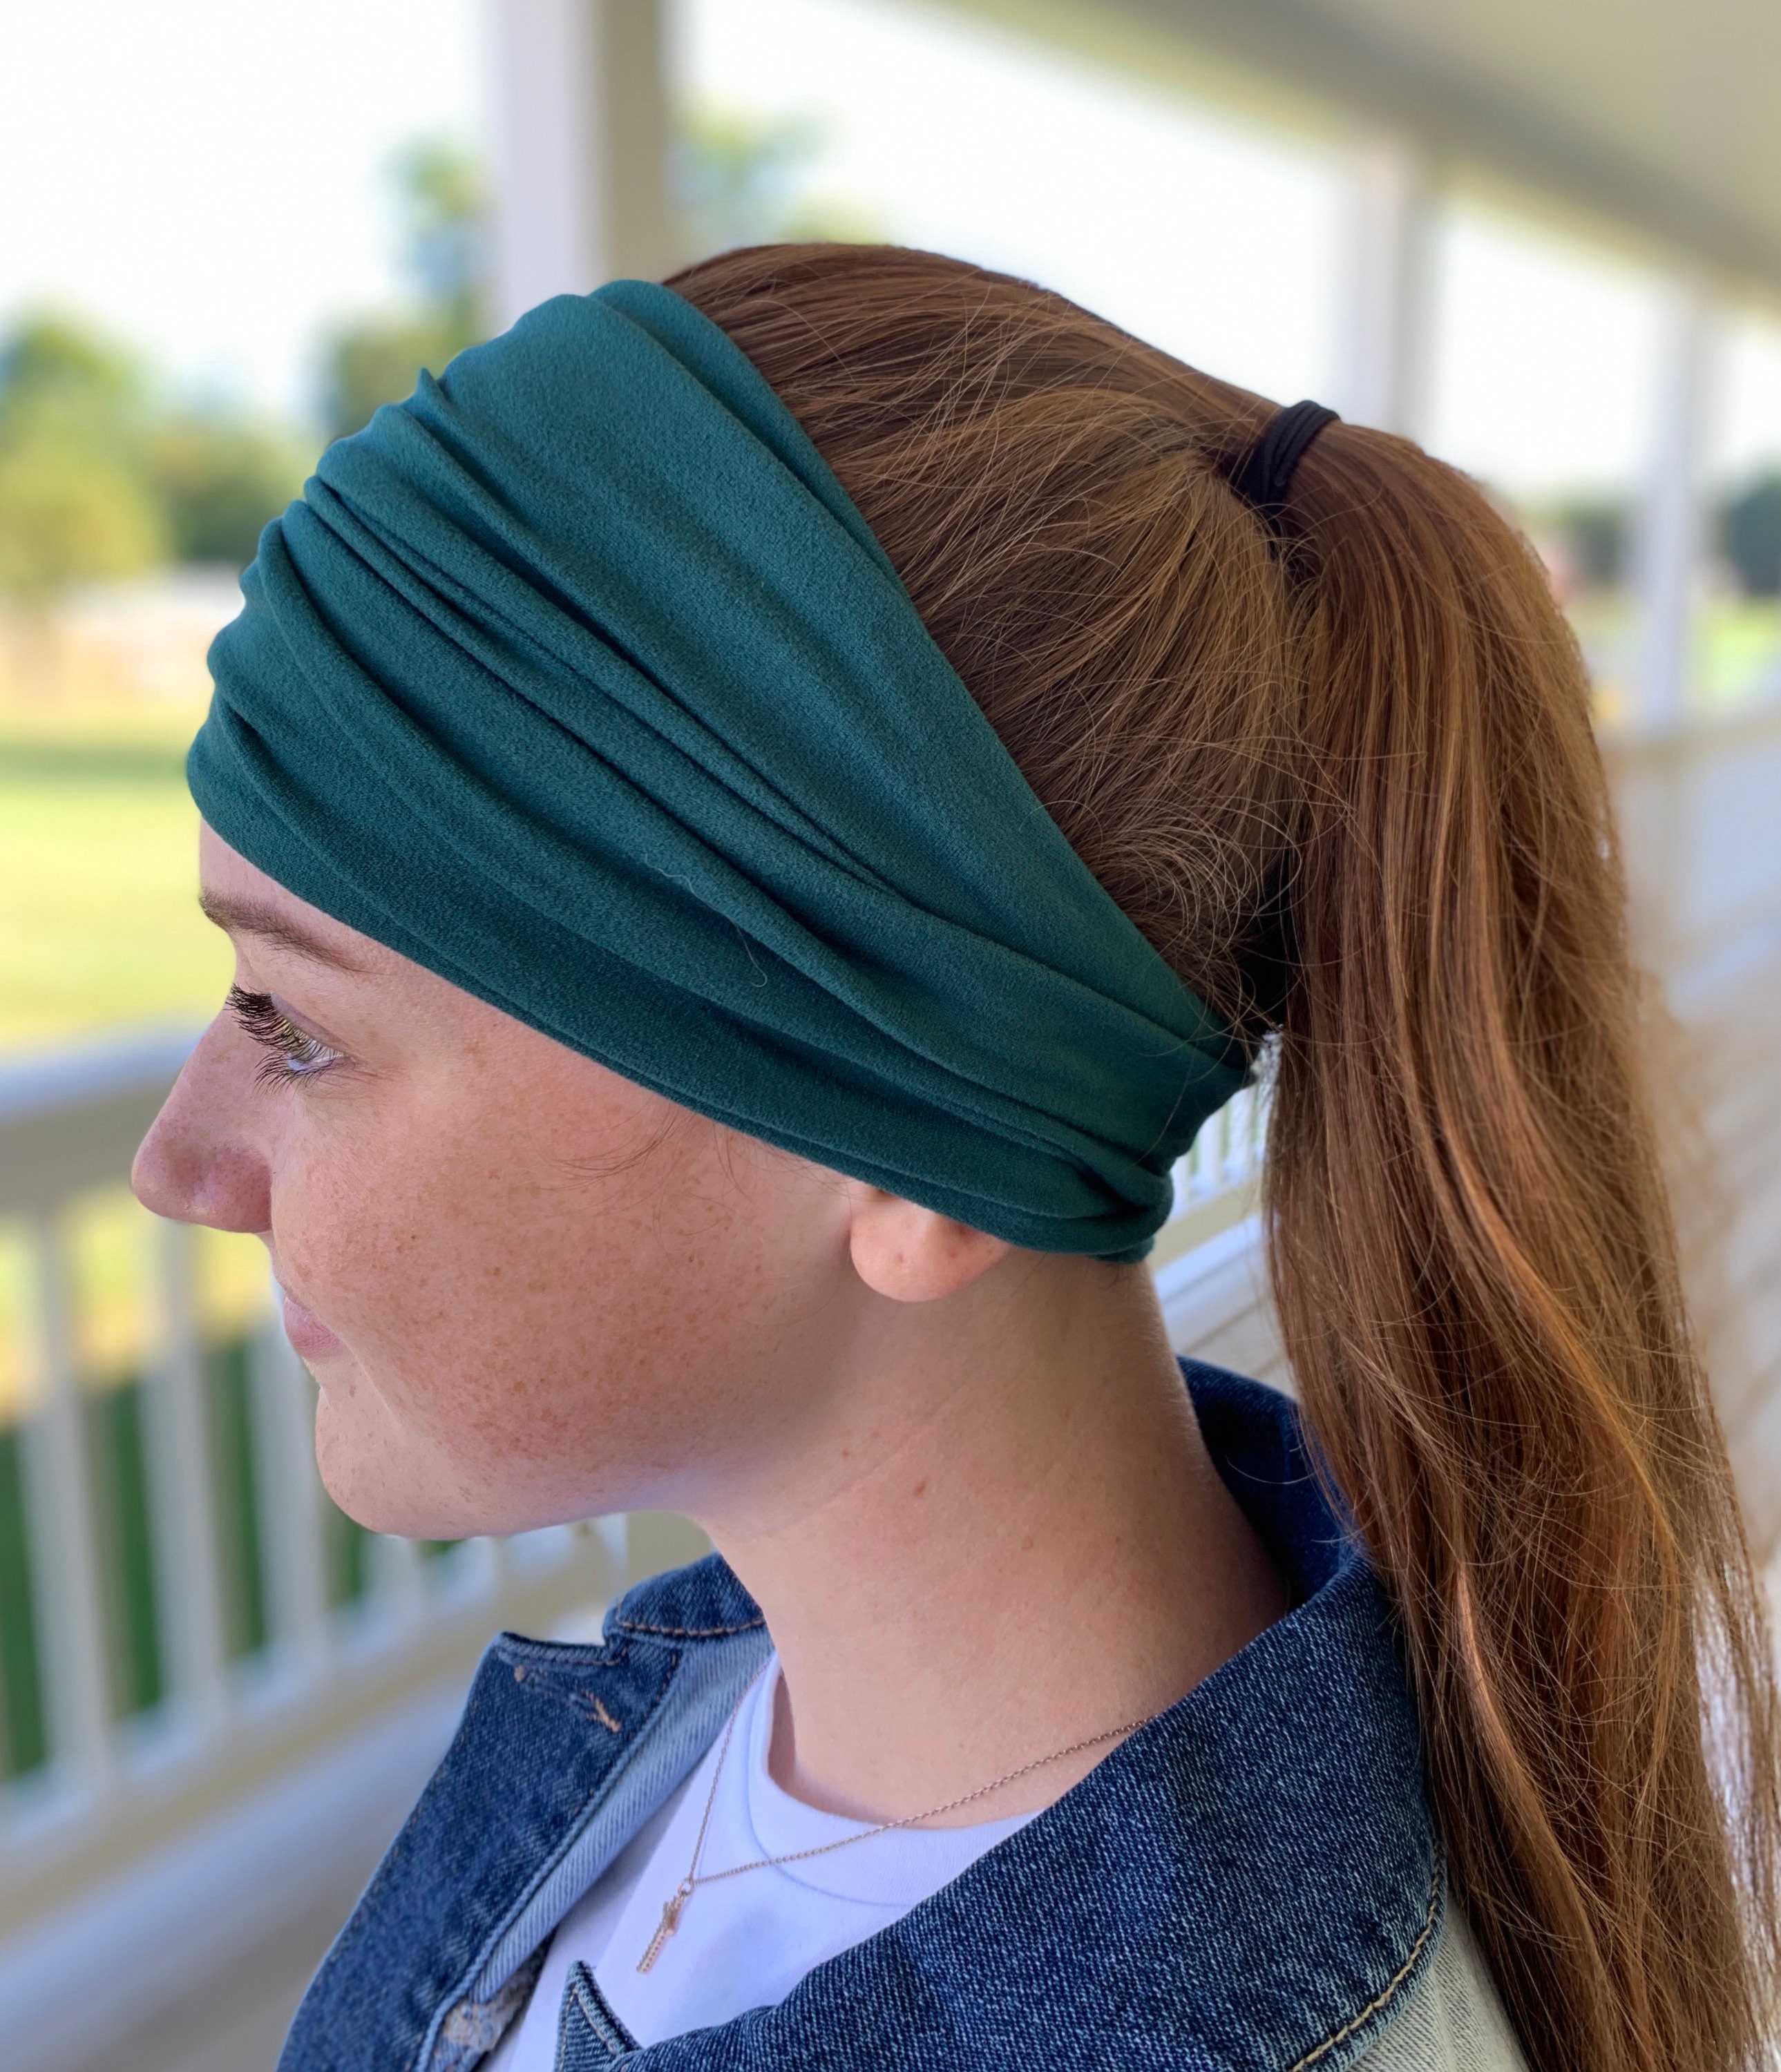 Extra Wide Headband Yoga Headband Women Headband, Workout Headband Scrunch Headbands Running Headband